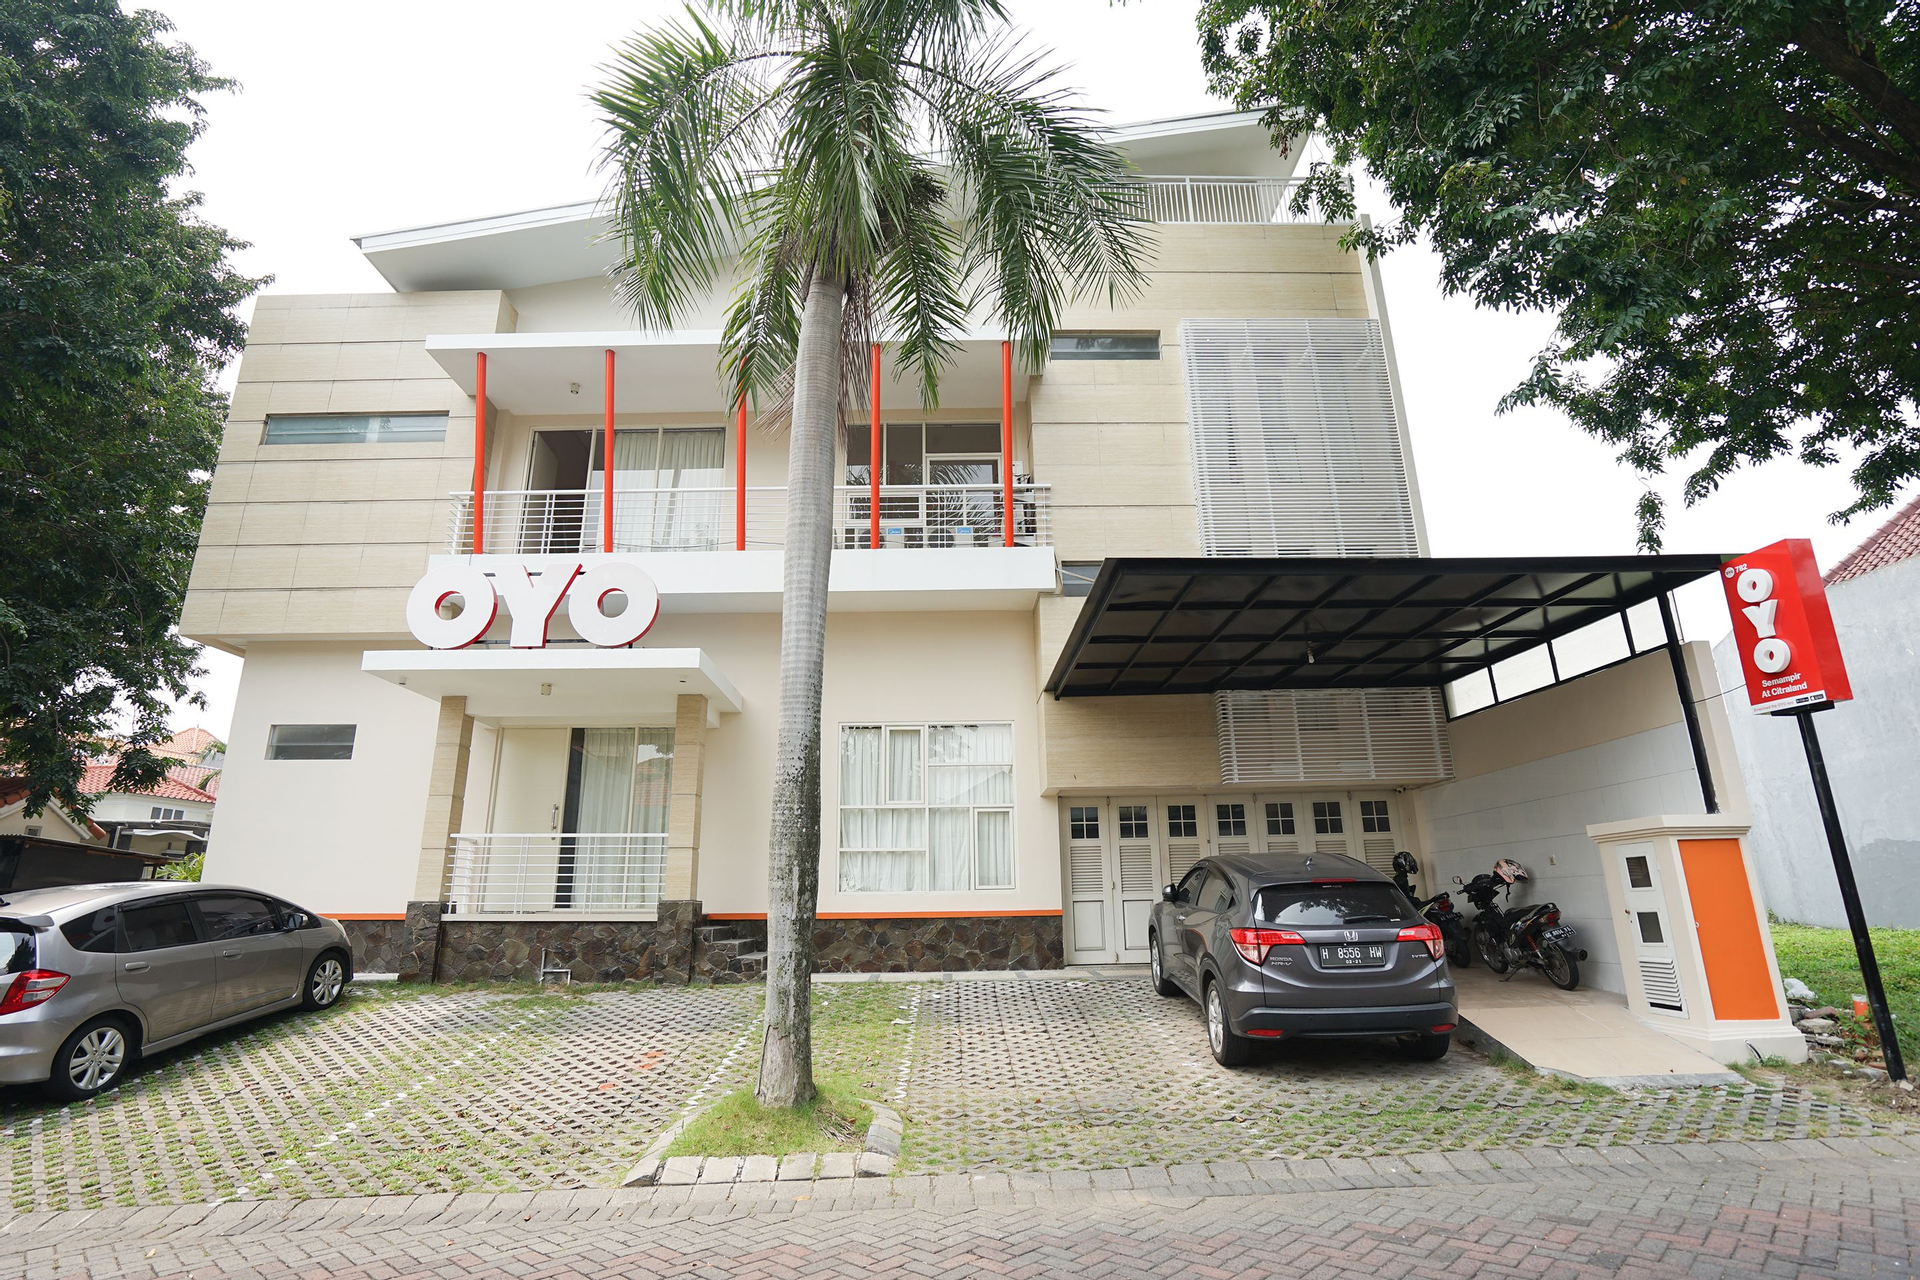 Exterior & Views 1, OYO 782 Menjangan Residence at Citraland 1, Surabaya